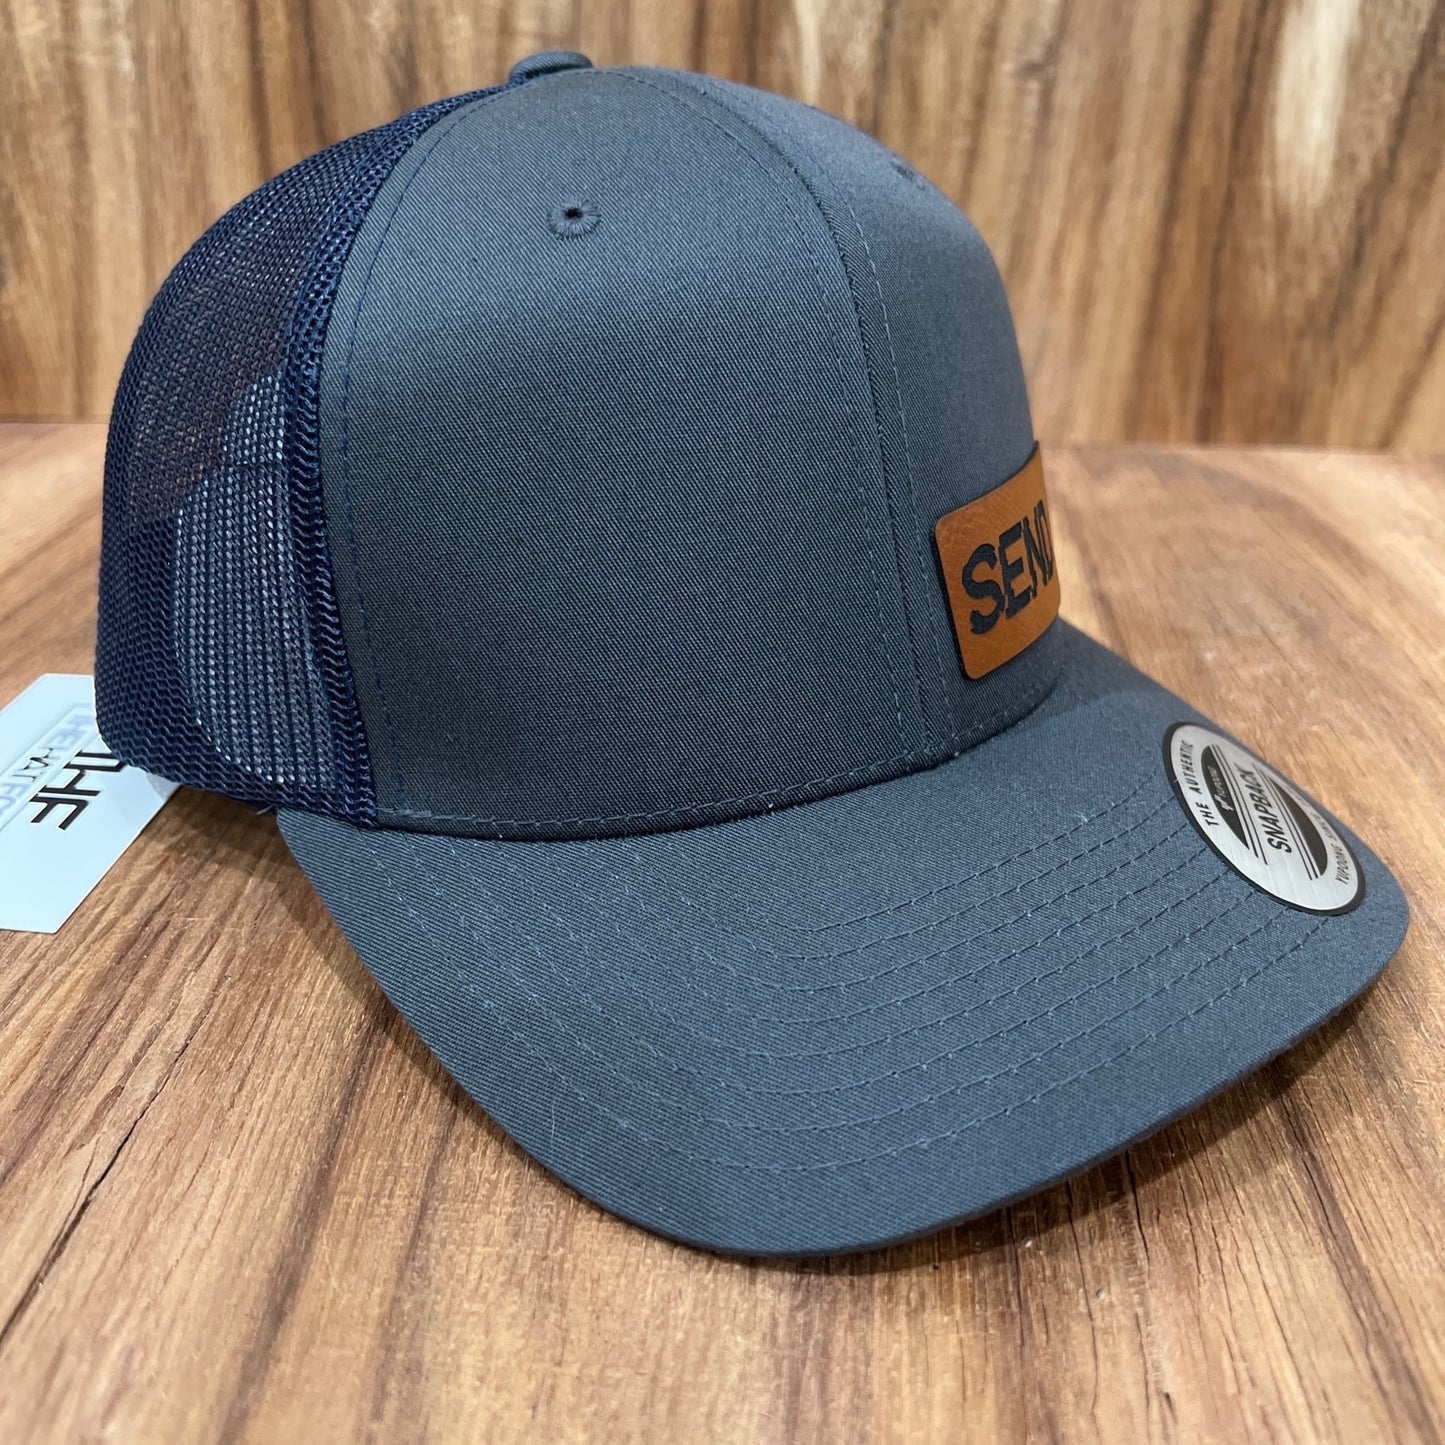 SEND IT - Yupoong 6606 SnapBack Trucker Hat